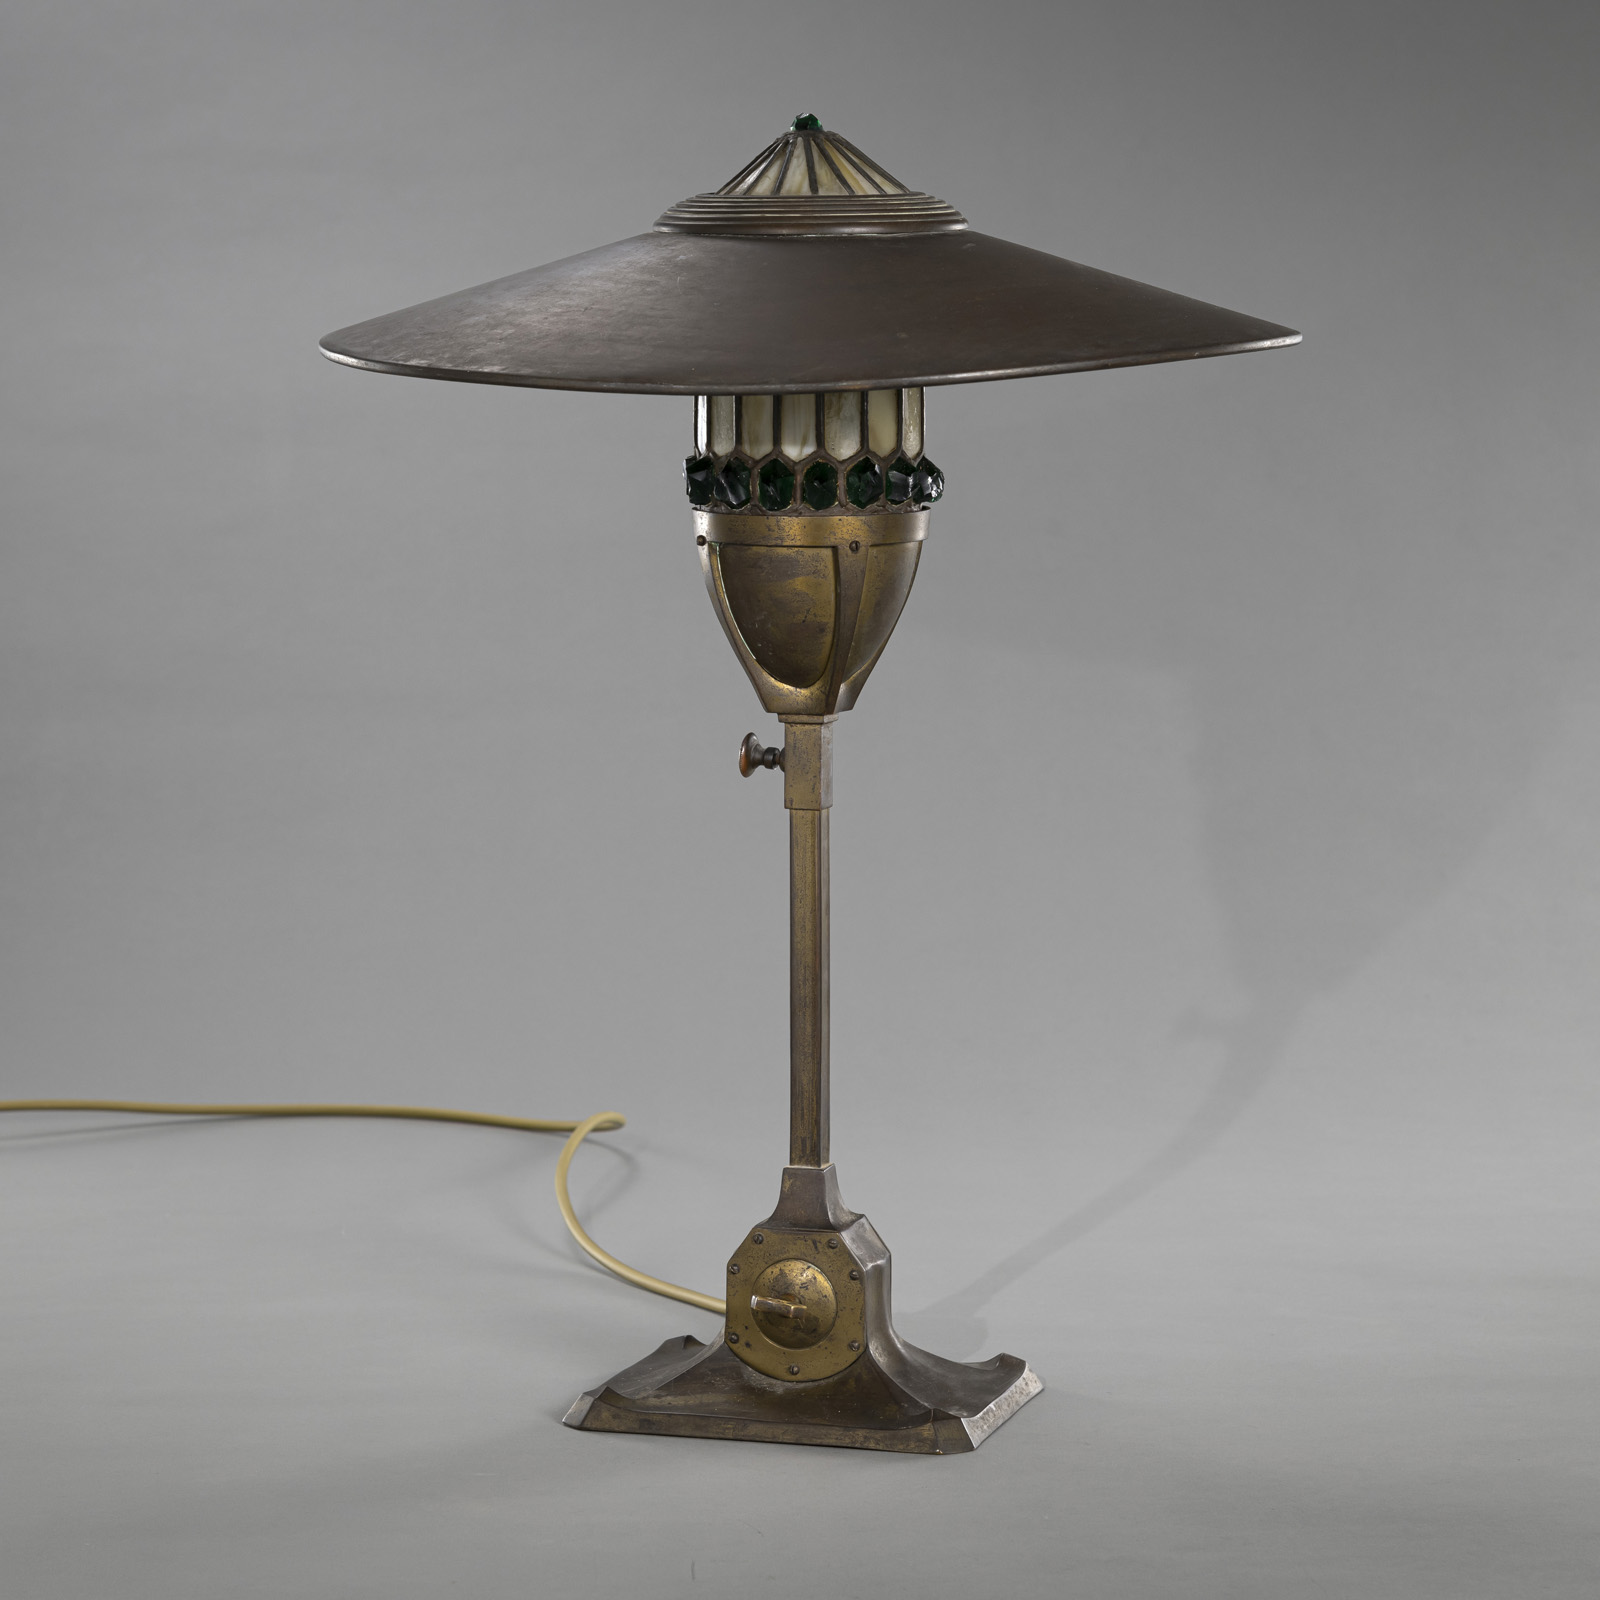 AN ART DECO TABLE LAMP